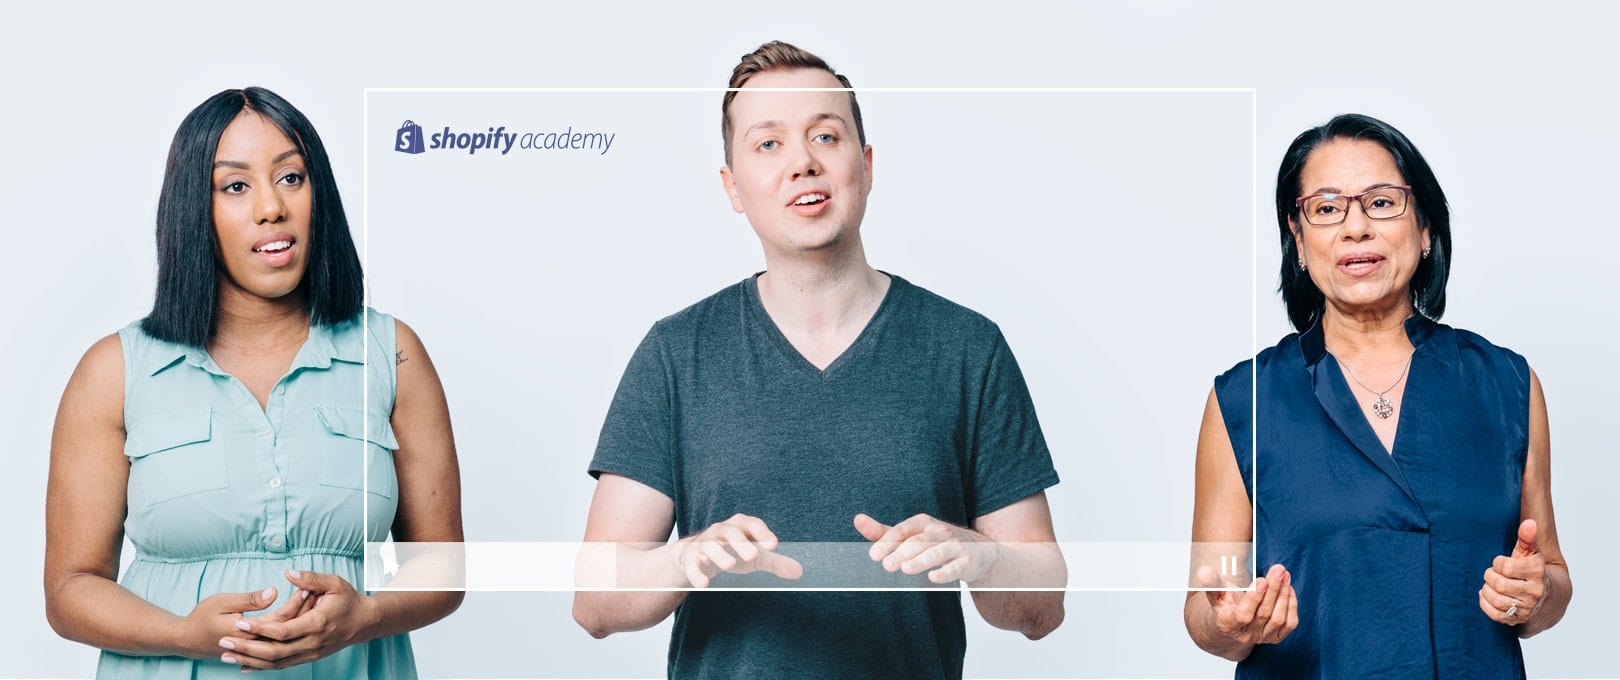 Academia de Shopify: capacitación gratuita para emprendedores